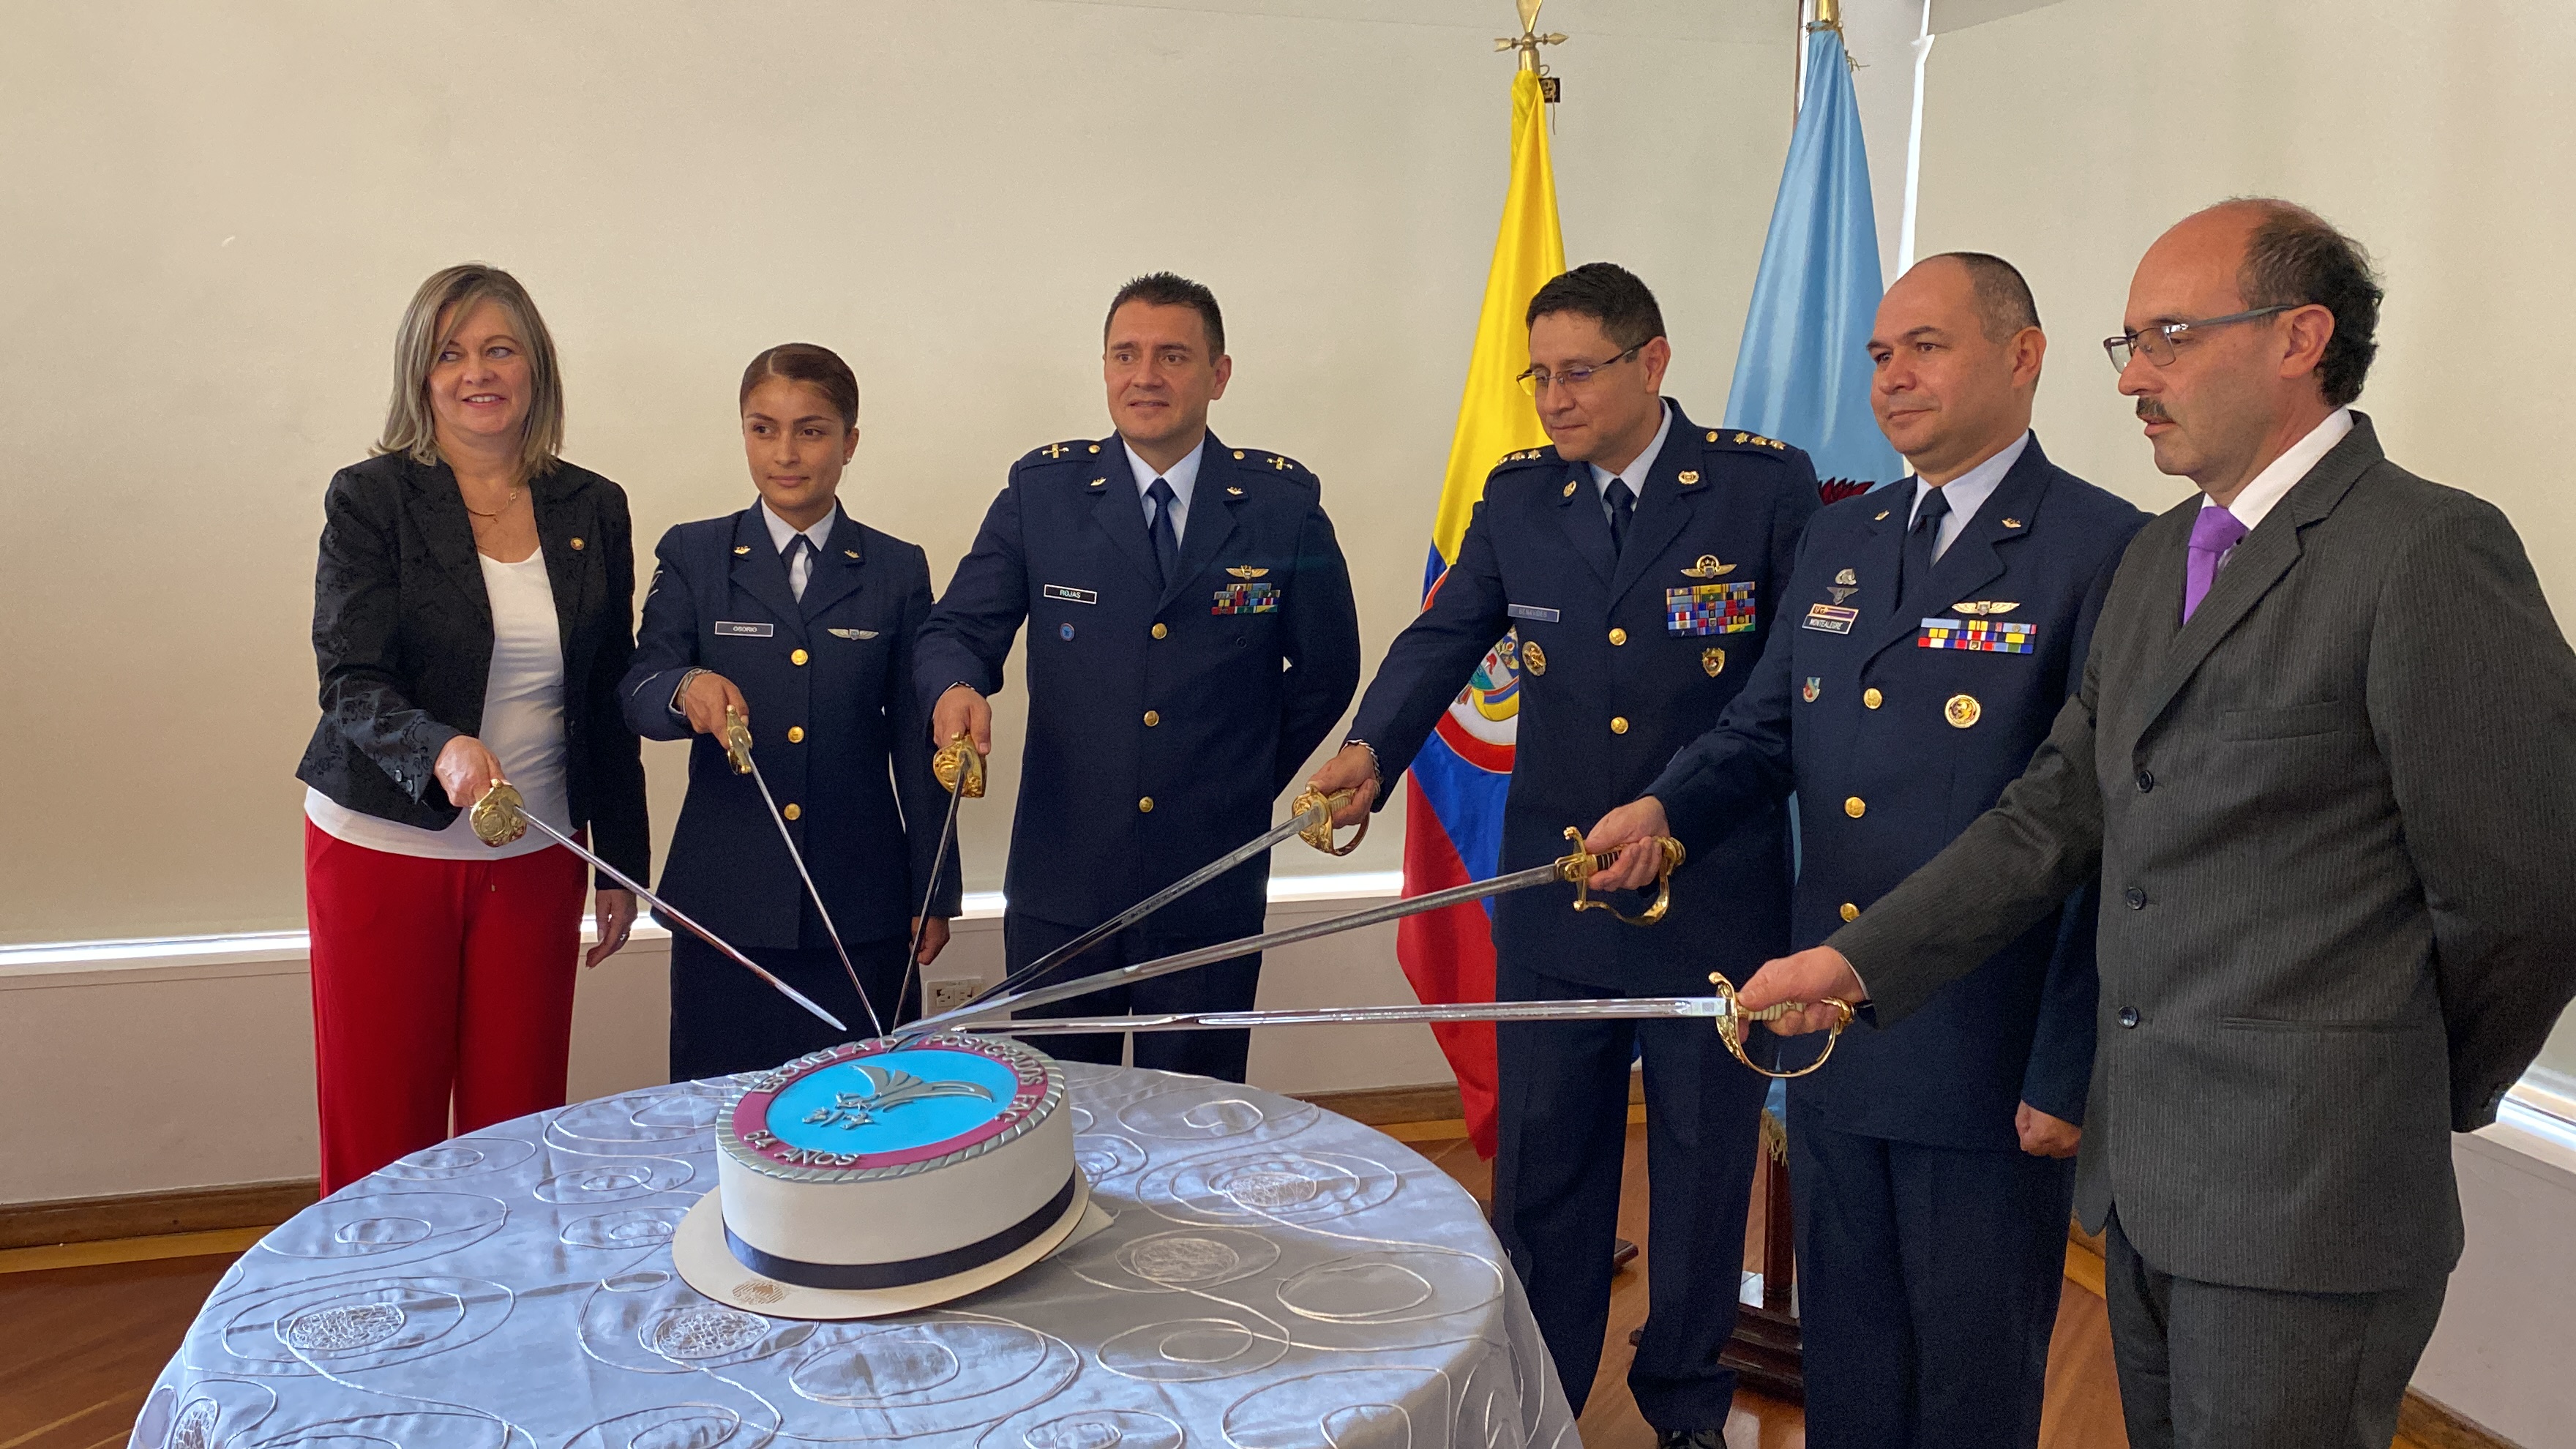 Con ceremonia militar, la EPFAC conmemoró 64 años de servicio